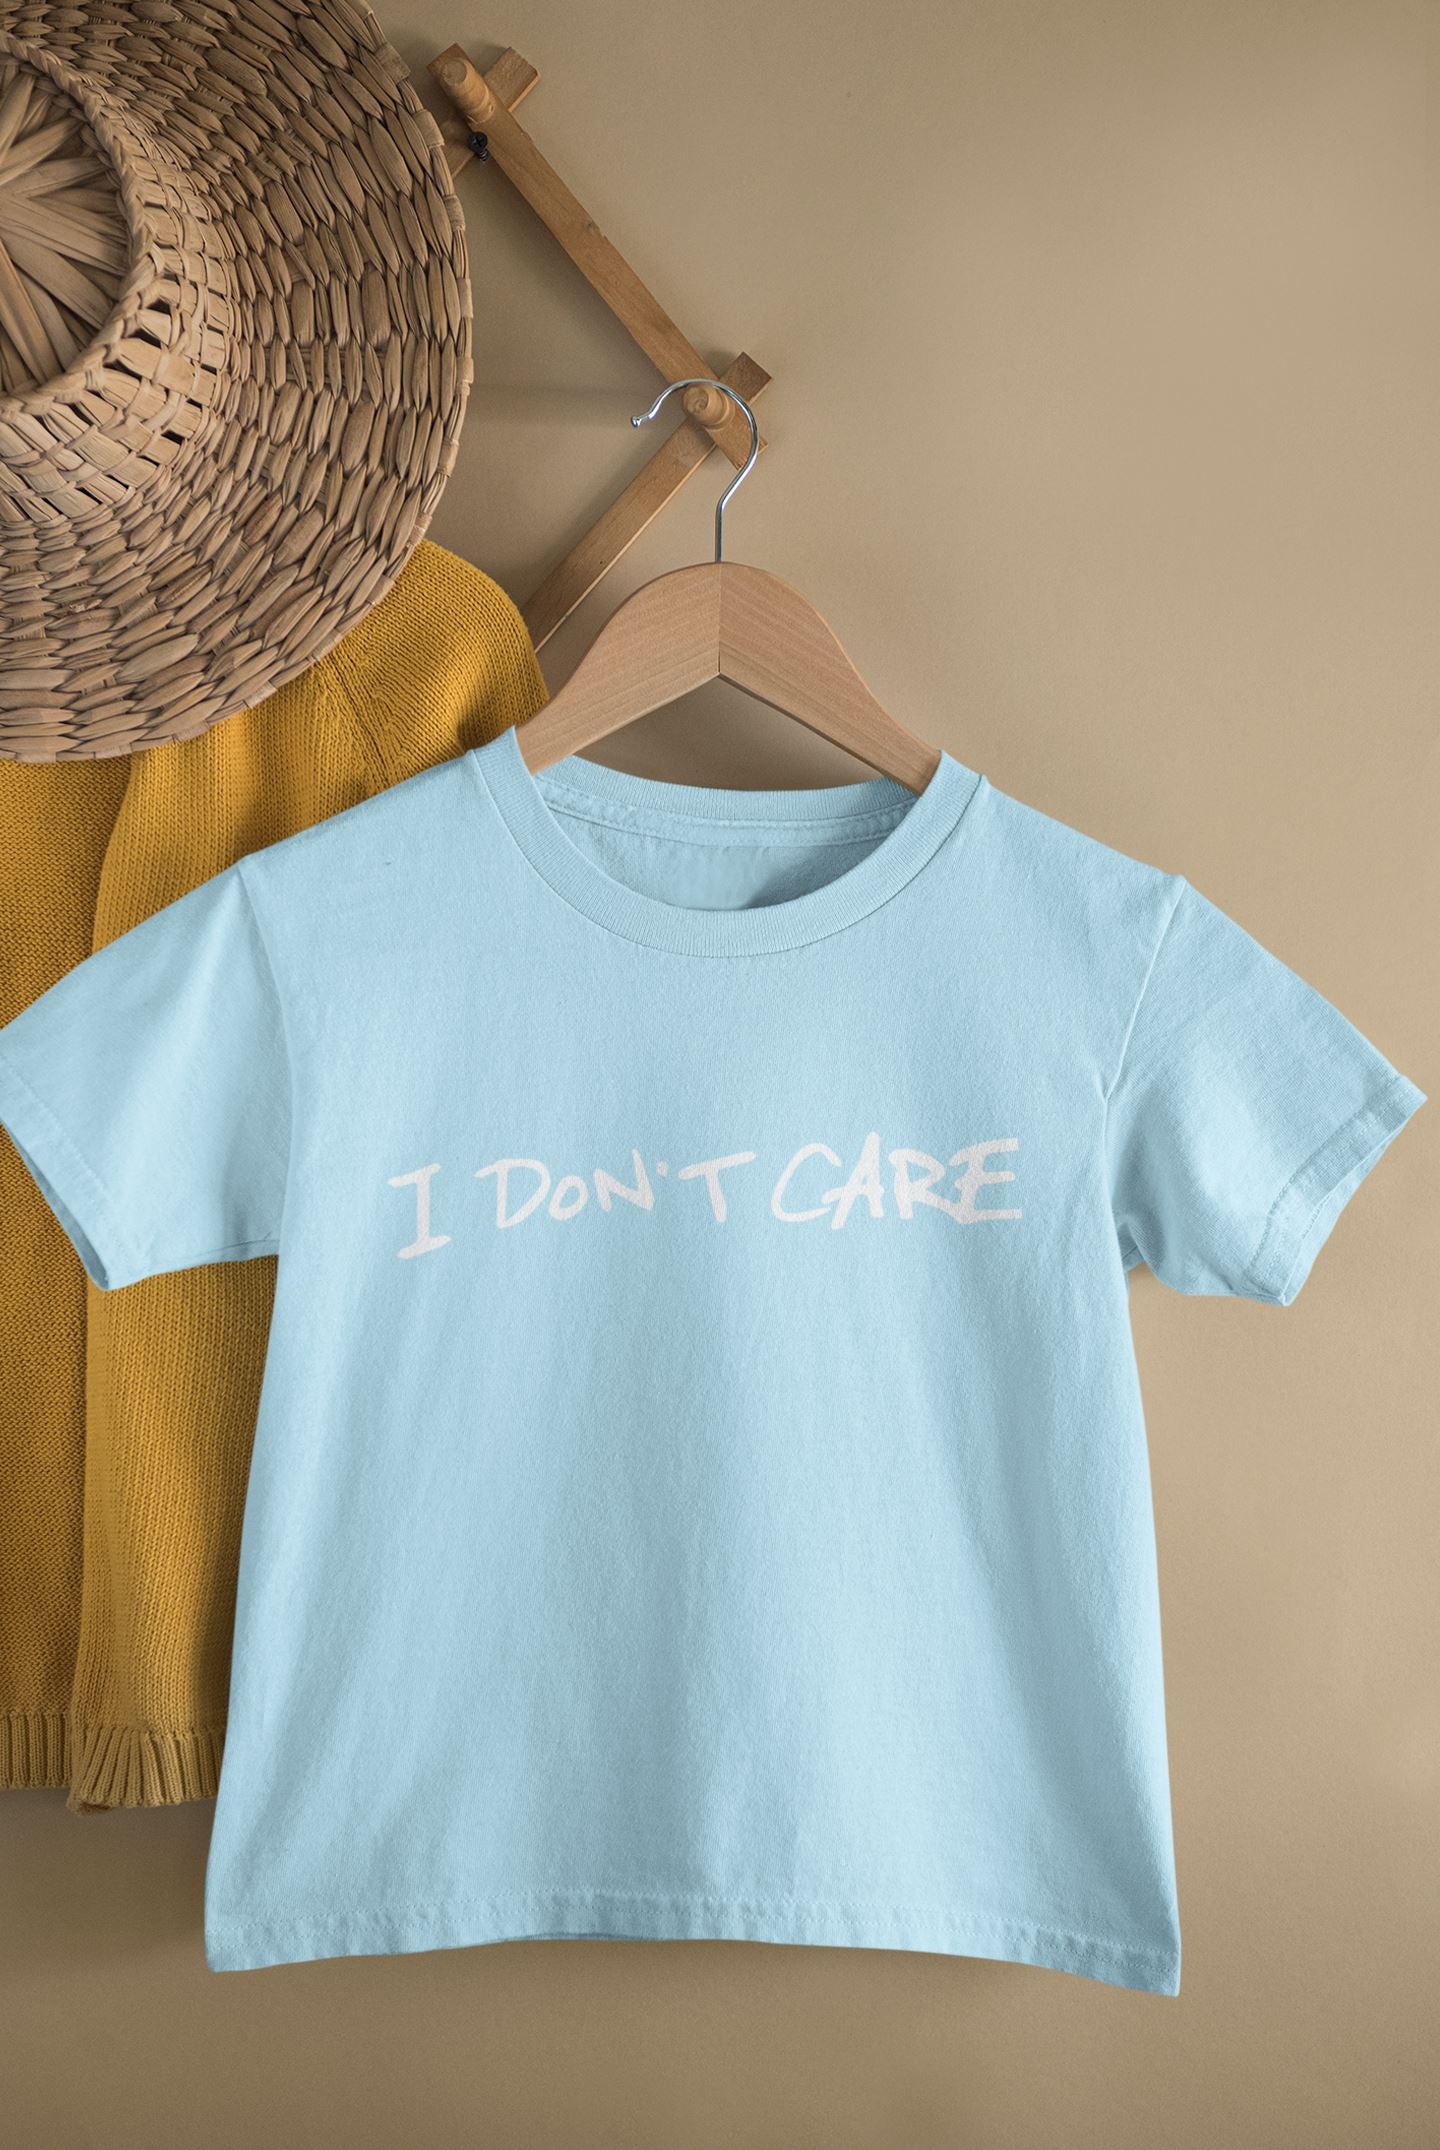 I don't care Slogan Kids T-shirt